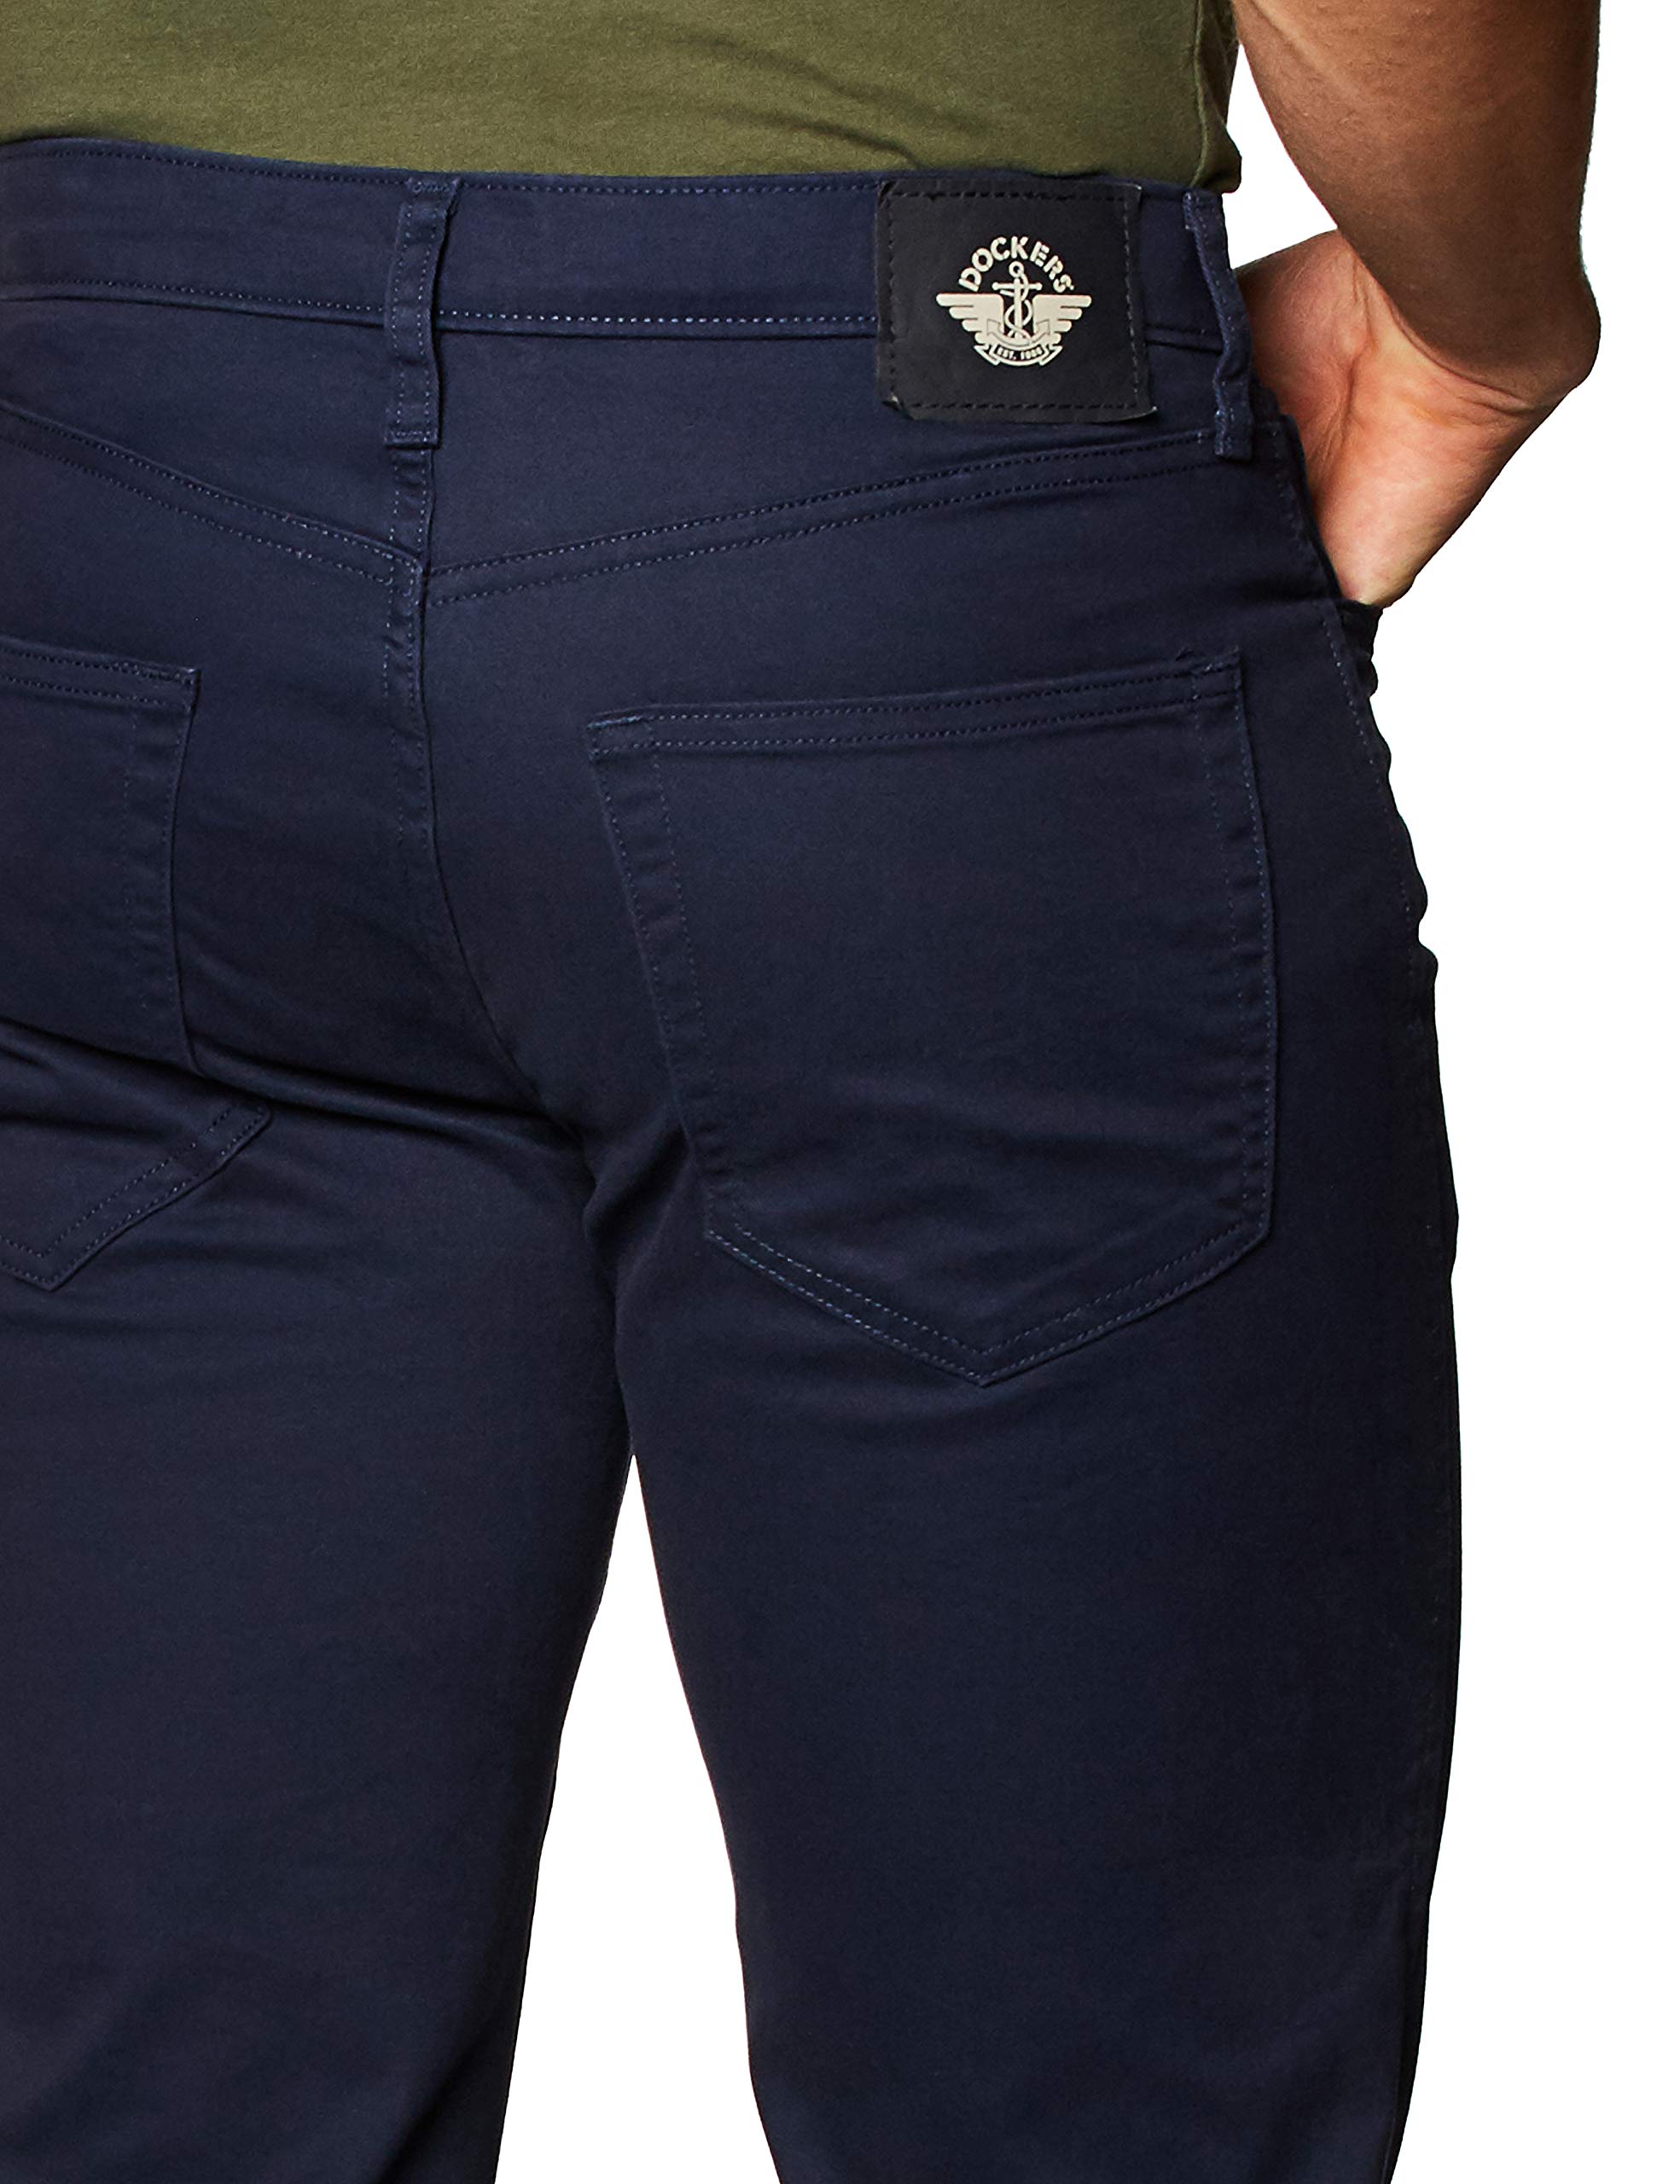 Mua Dockers Men's Straight Fit Jean Cut All Seasons Tech Pants trên ...